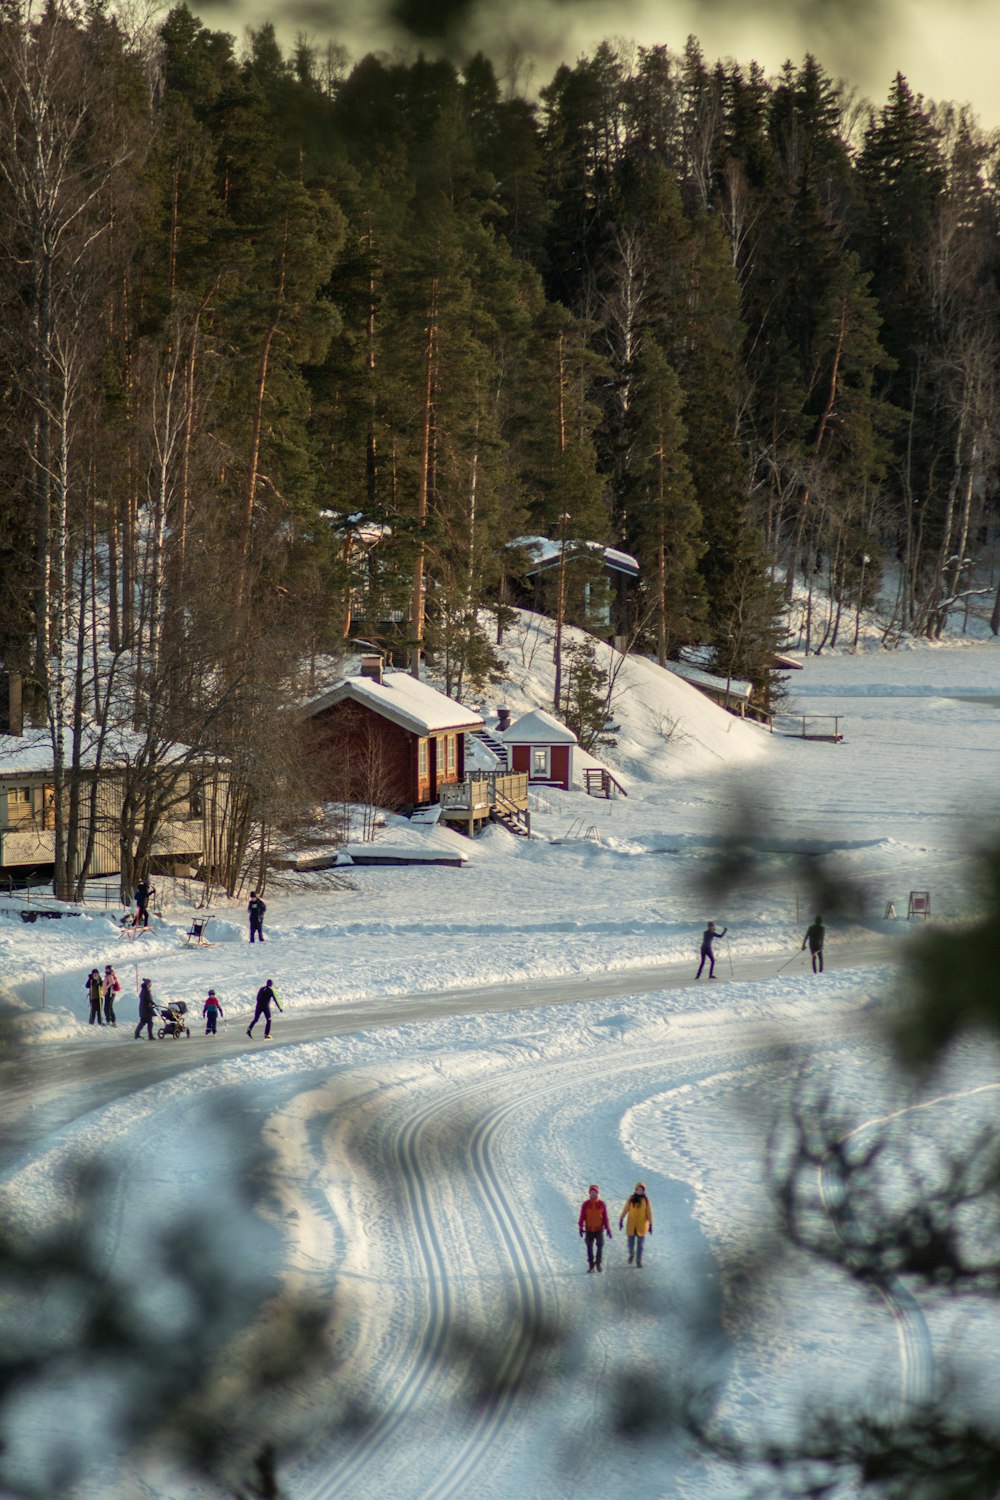 Un grupo de personas montando esquís por una pendiente cubierta de nieve